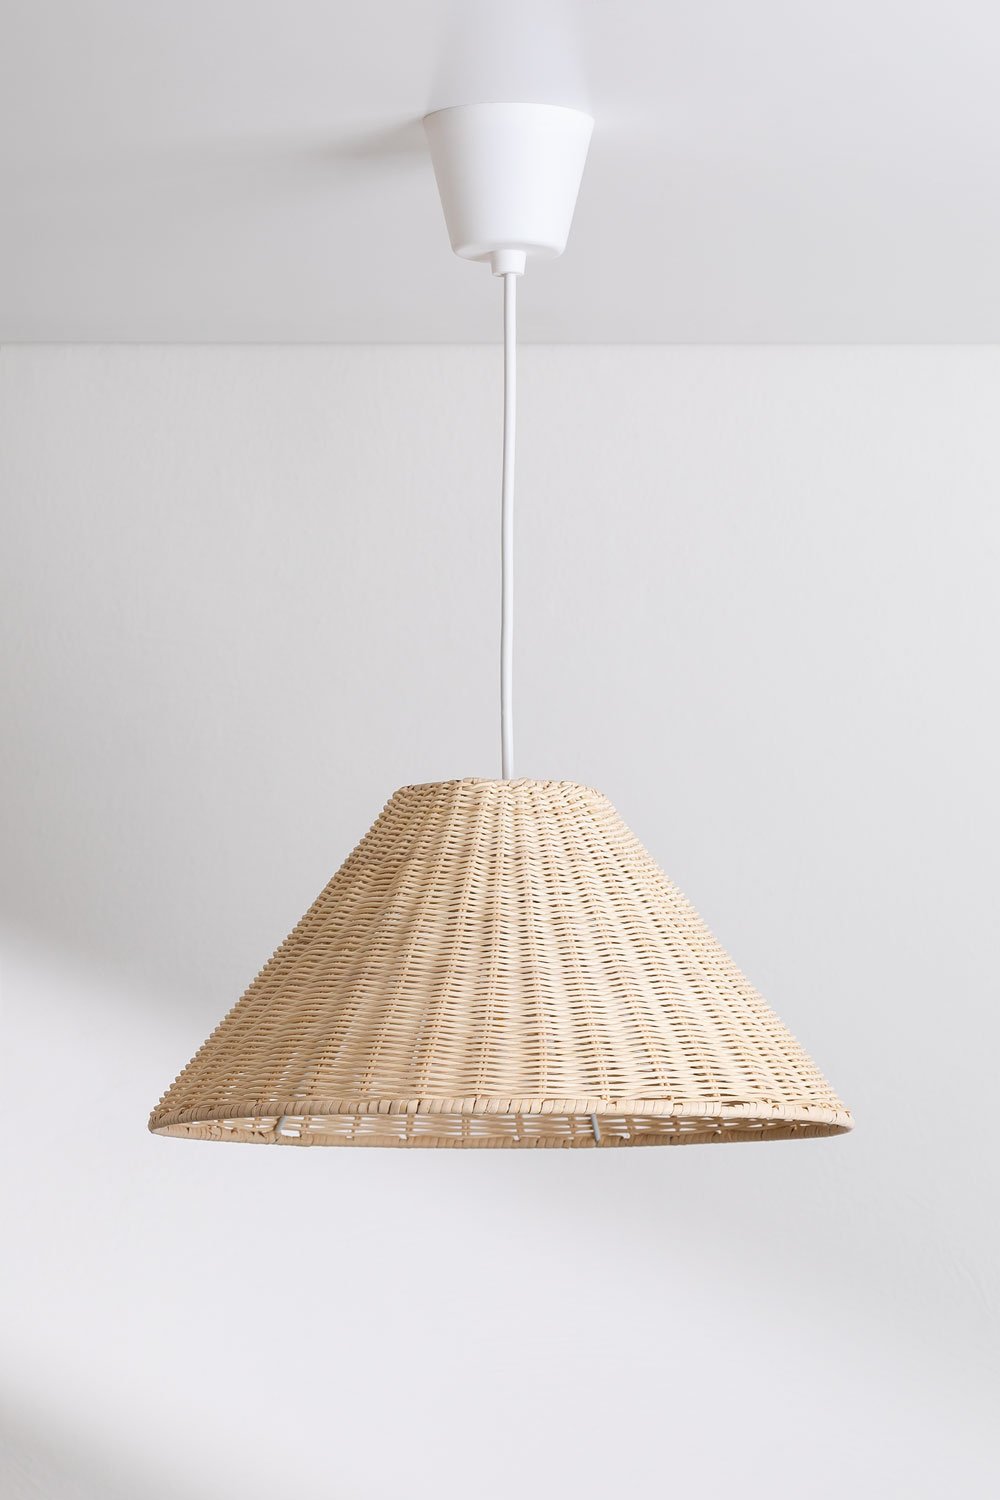 Buitenplafondlamp in Betania bamboe, galerij beeld 1